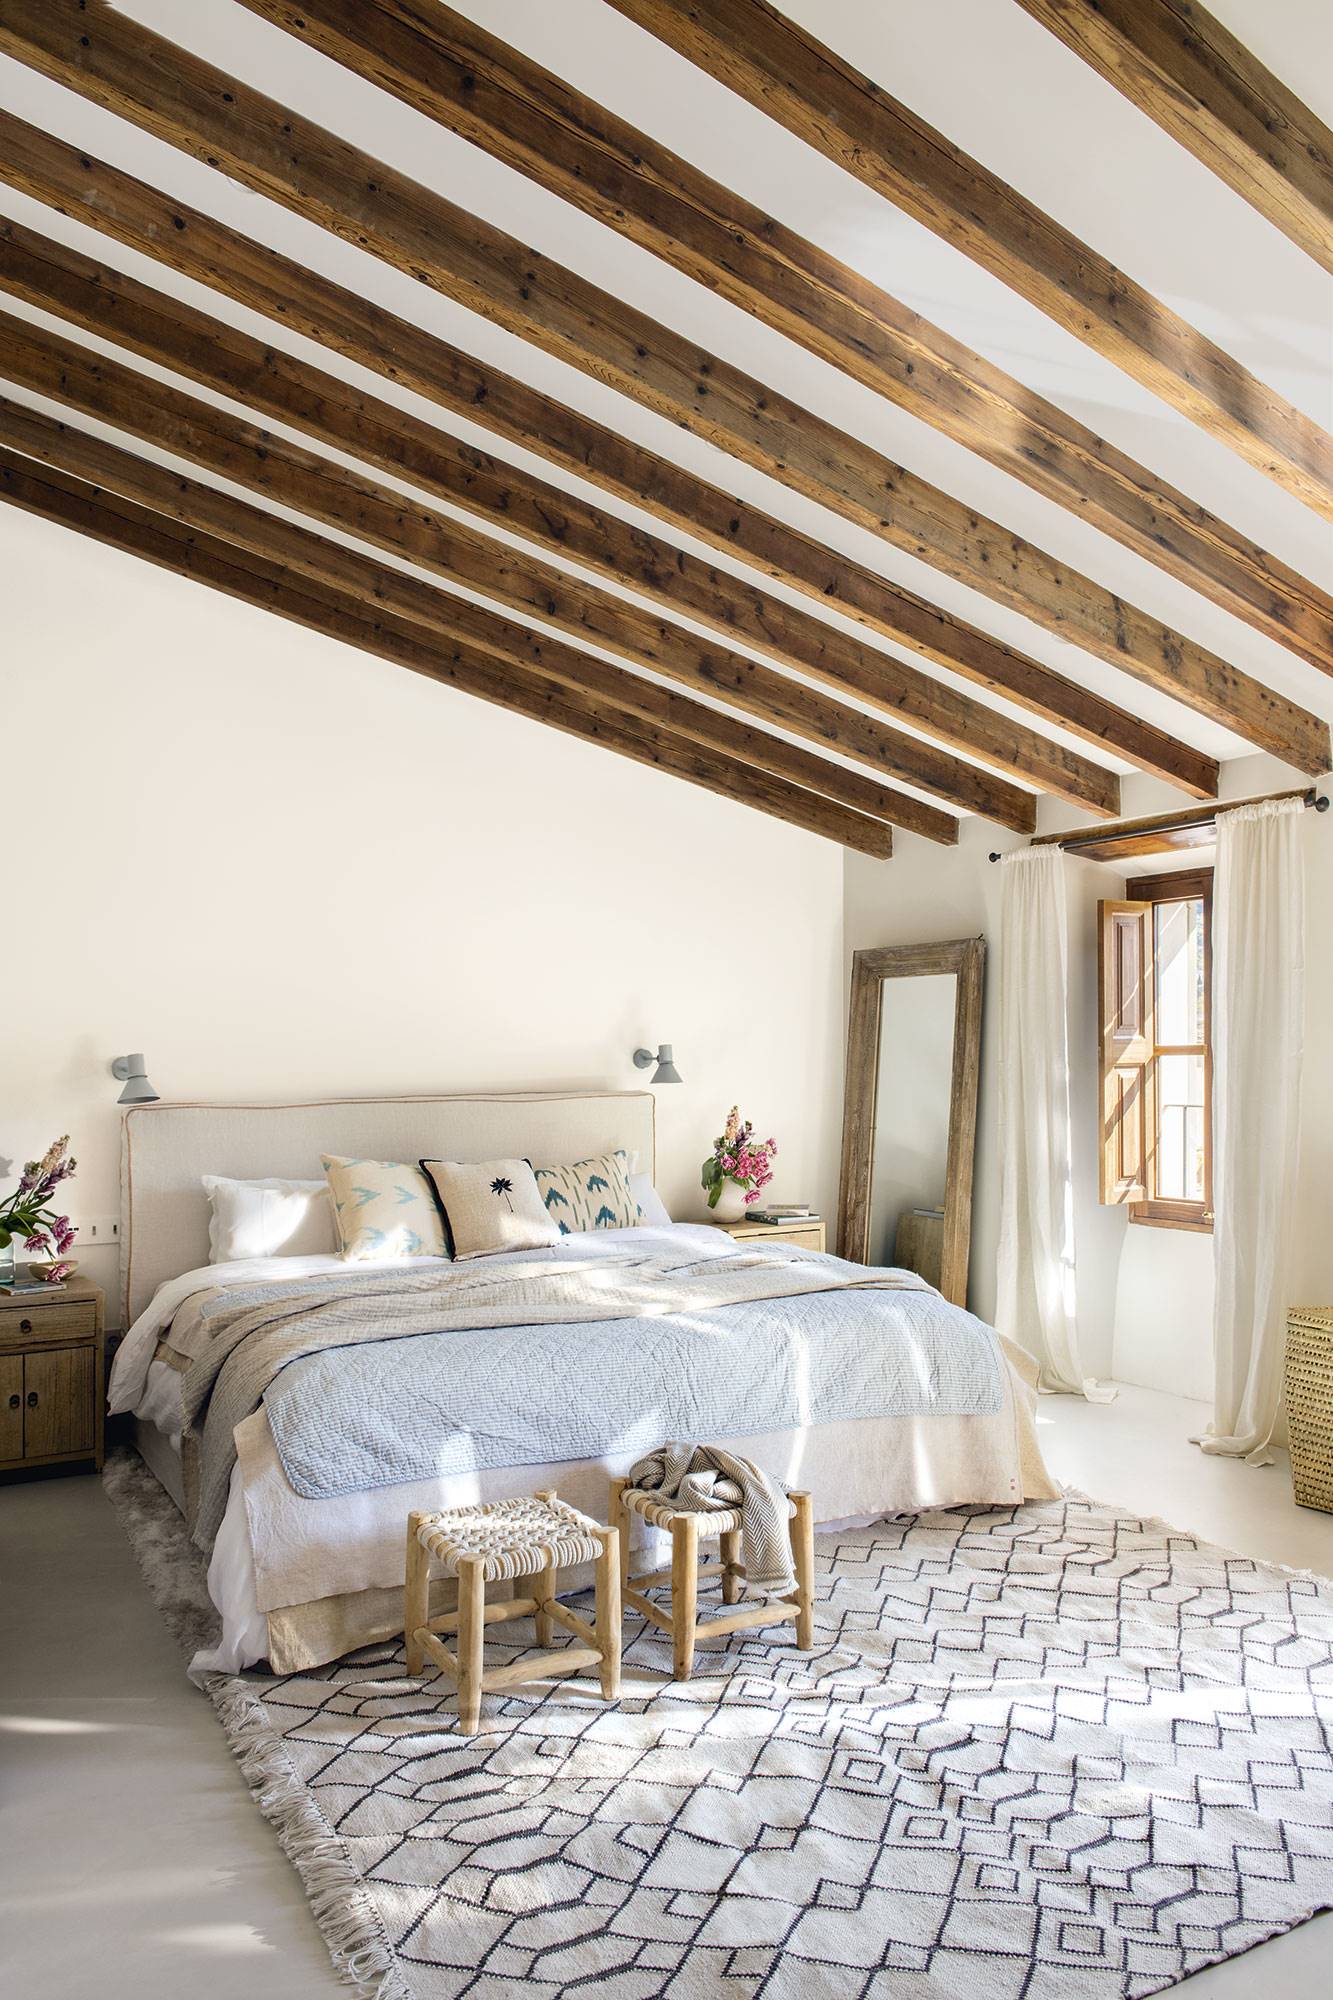 Dormitorio principal con el techo abuhardillado y las vigas de madera